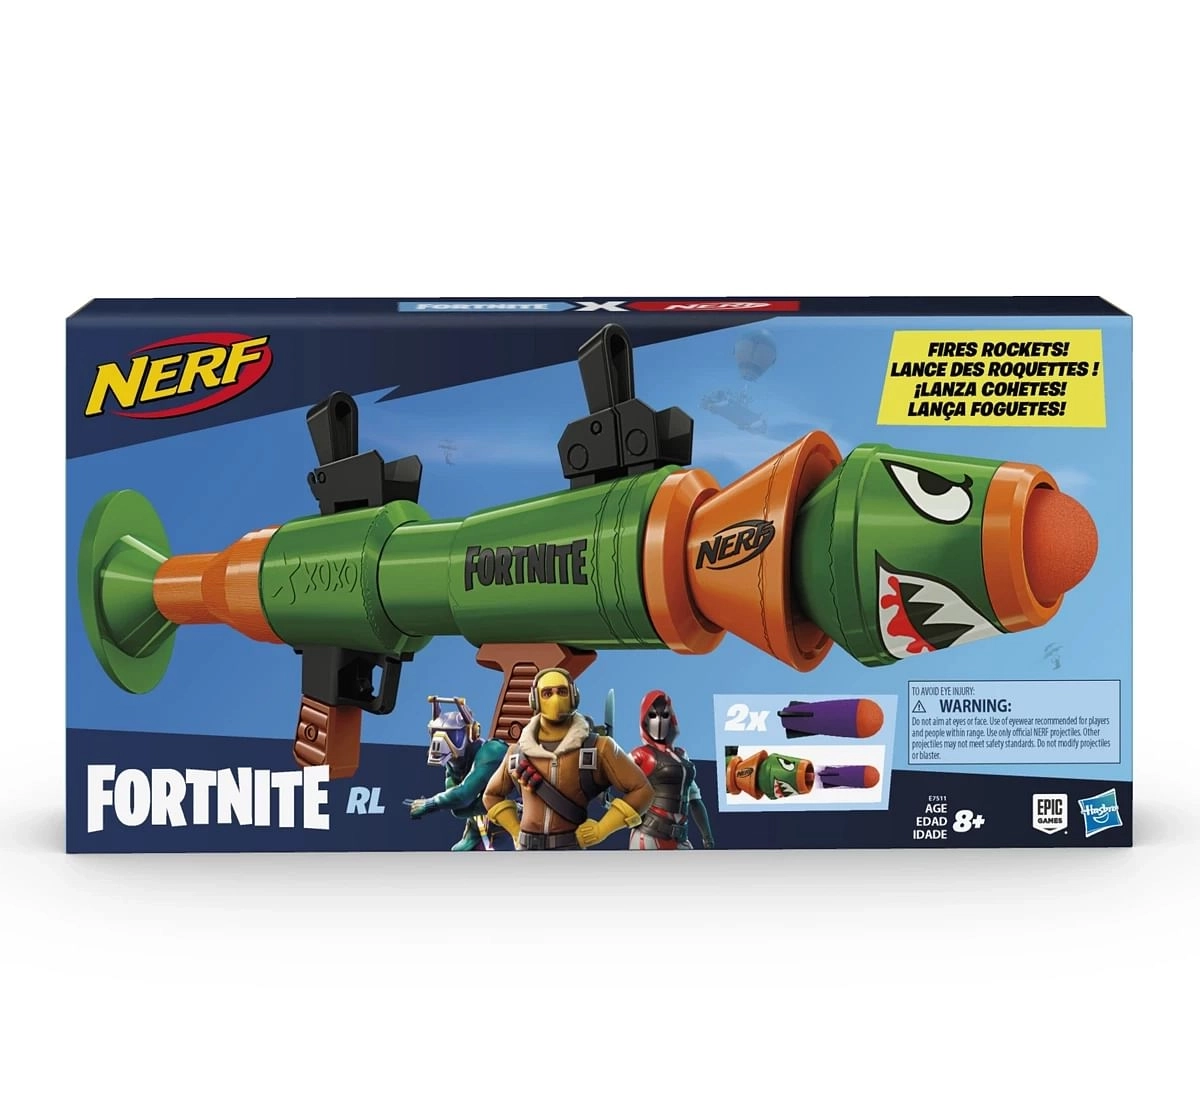 Nerf Fortnite RL Blaster Fires Foam Rockets for kids 8Y+, Multicolour